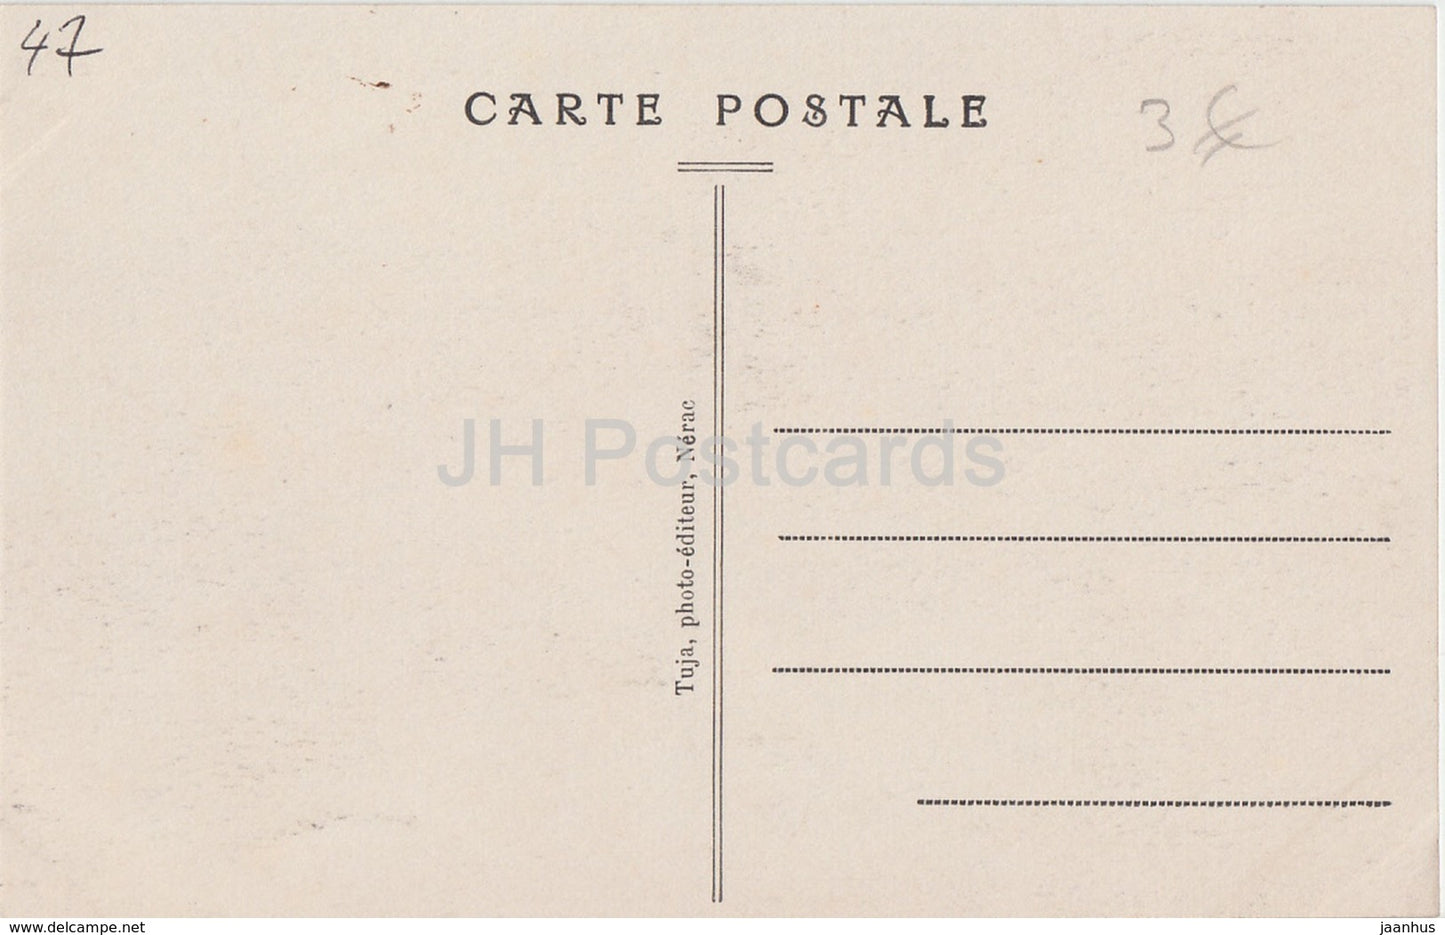 Nerac - Le Vieux Chateau d'Henri IV - castle - 2 - old postcard - France - unused